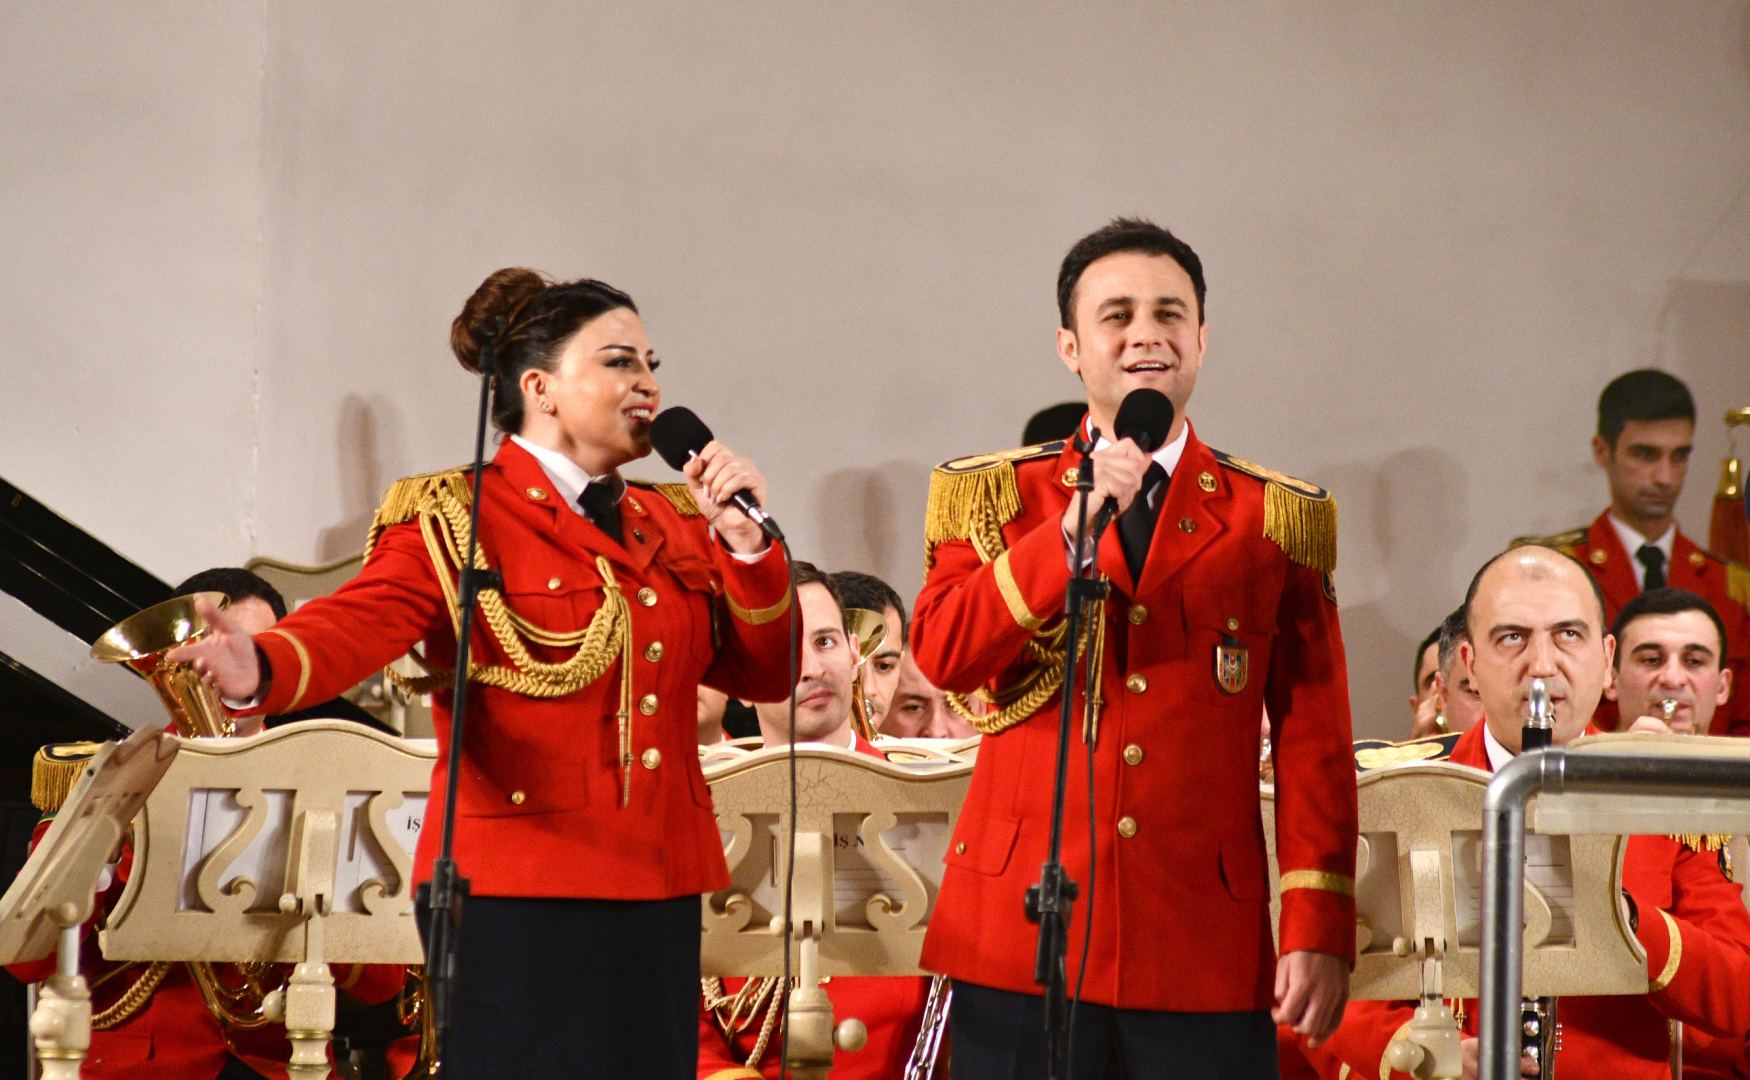 Müdafiə Nazirliyinin Əlahiddə Nümunəvi orkestrinin 30 illik yubileyinə həsr olunmuş konsert keçirilib (FOTO)